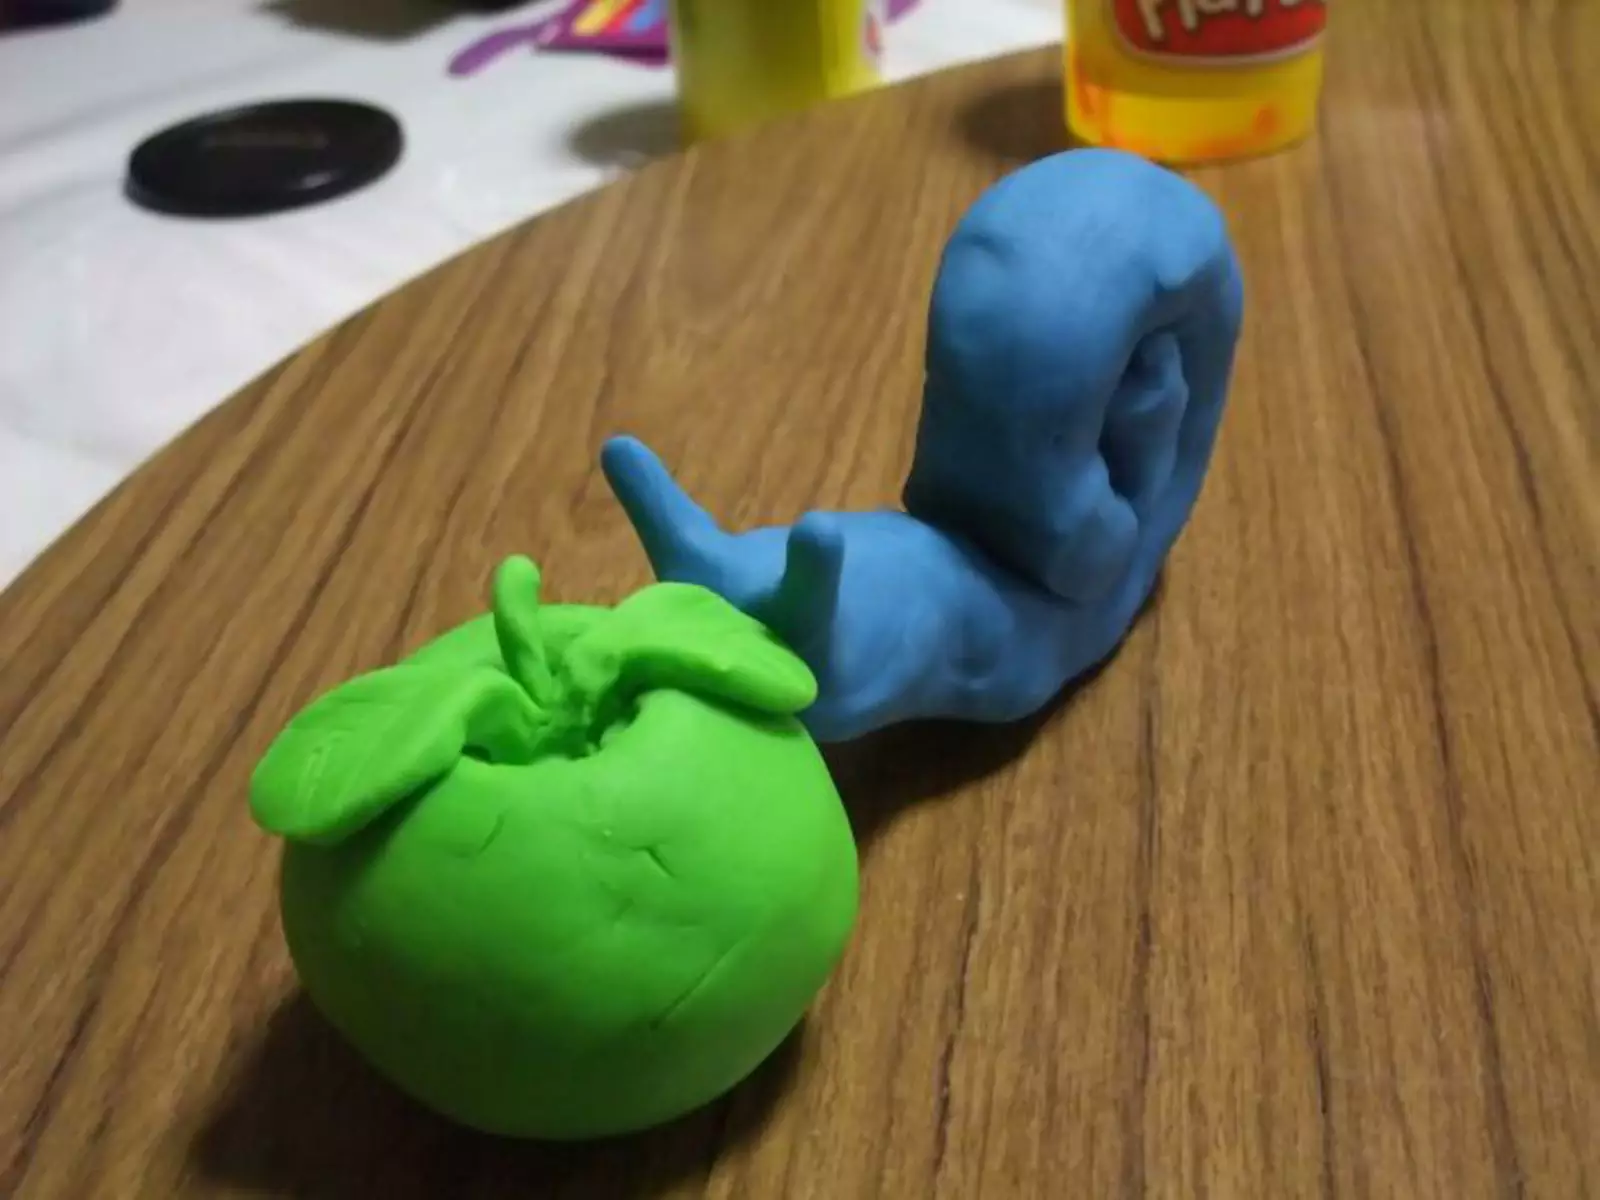 Пластилин Play-Doh изначально был использован в качестве средства для очистки обоев от сажи